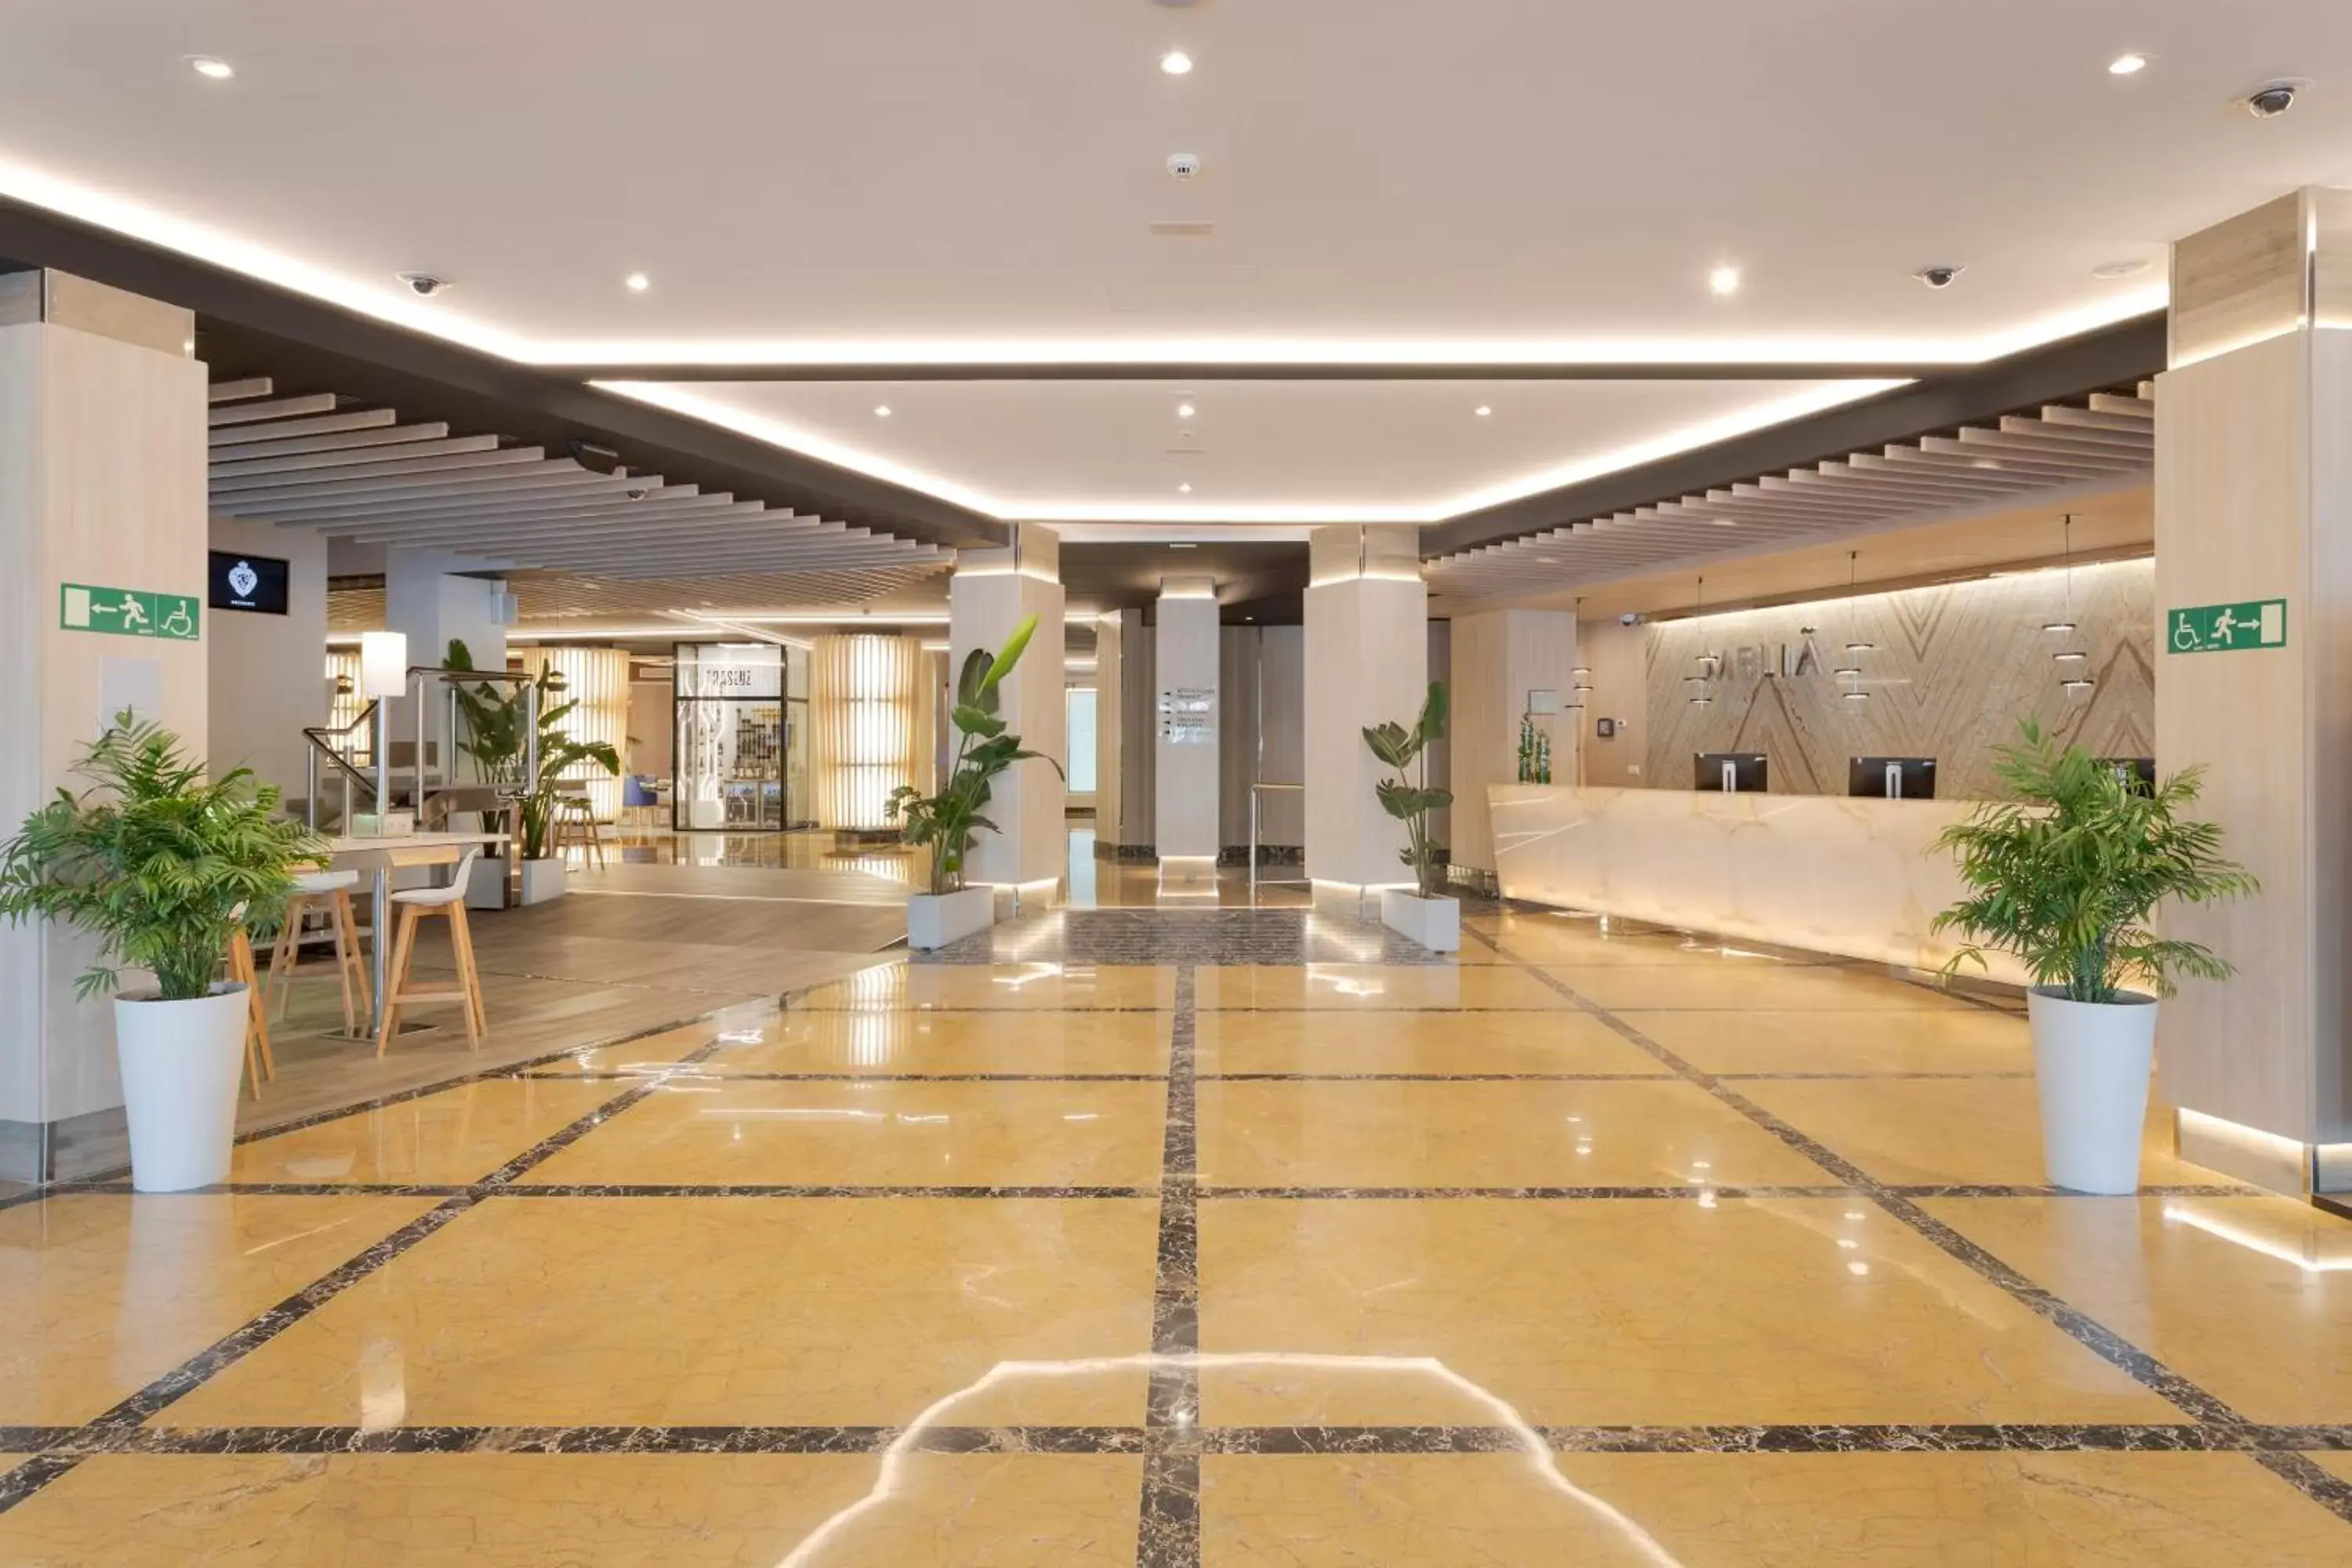 Lobby or reception, Lobby/Reception in Melia Alicante